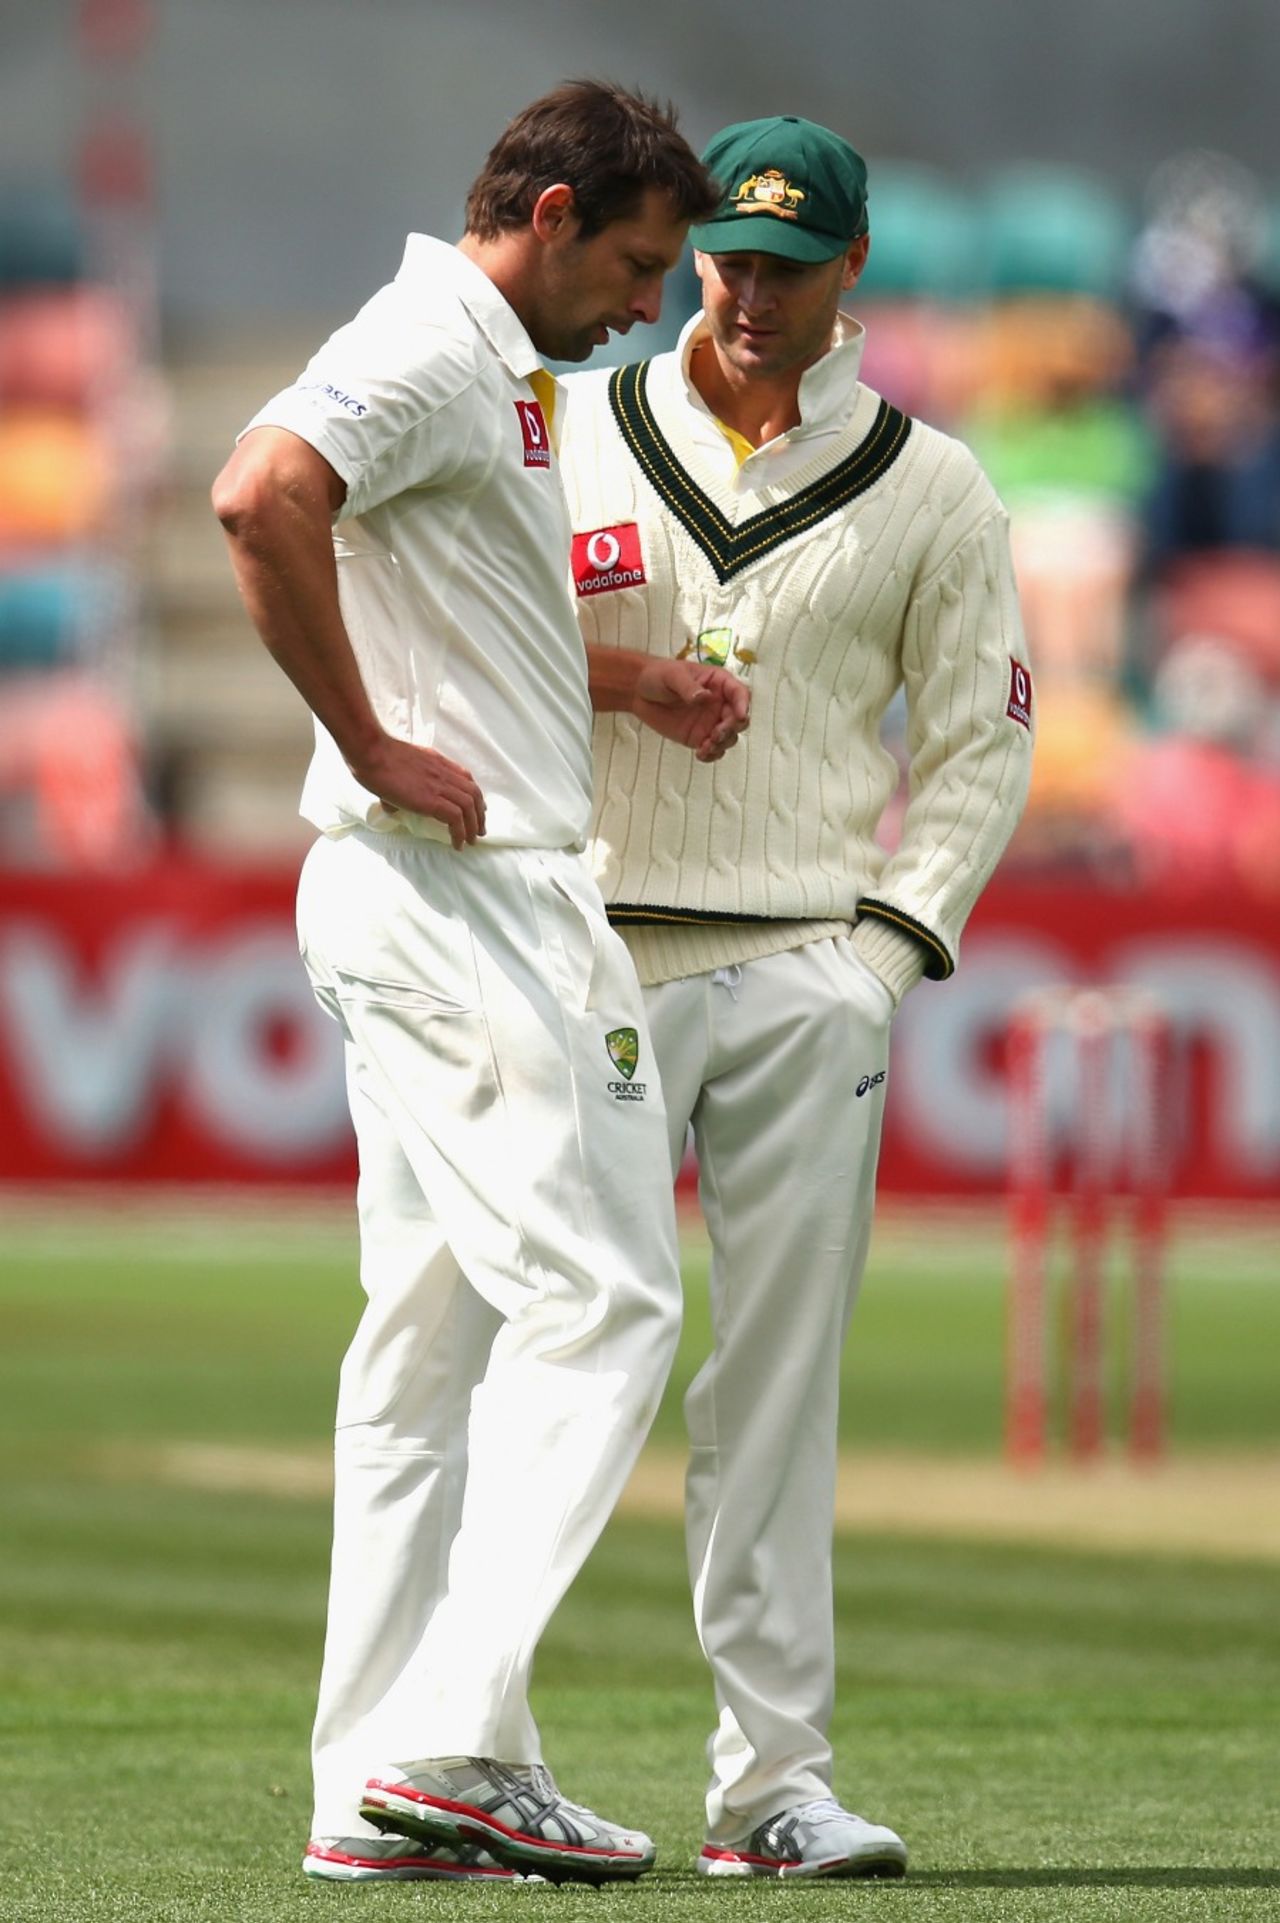 Michael Clarke checks on the injured Ben Hilfenhaus, Australia v Sri Lanka, 1st Test, Hobart, 3rd day, December 16, 2012